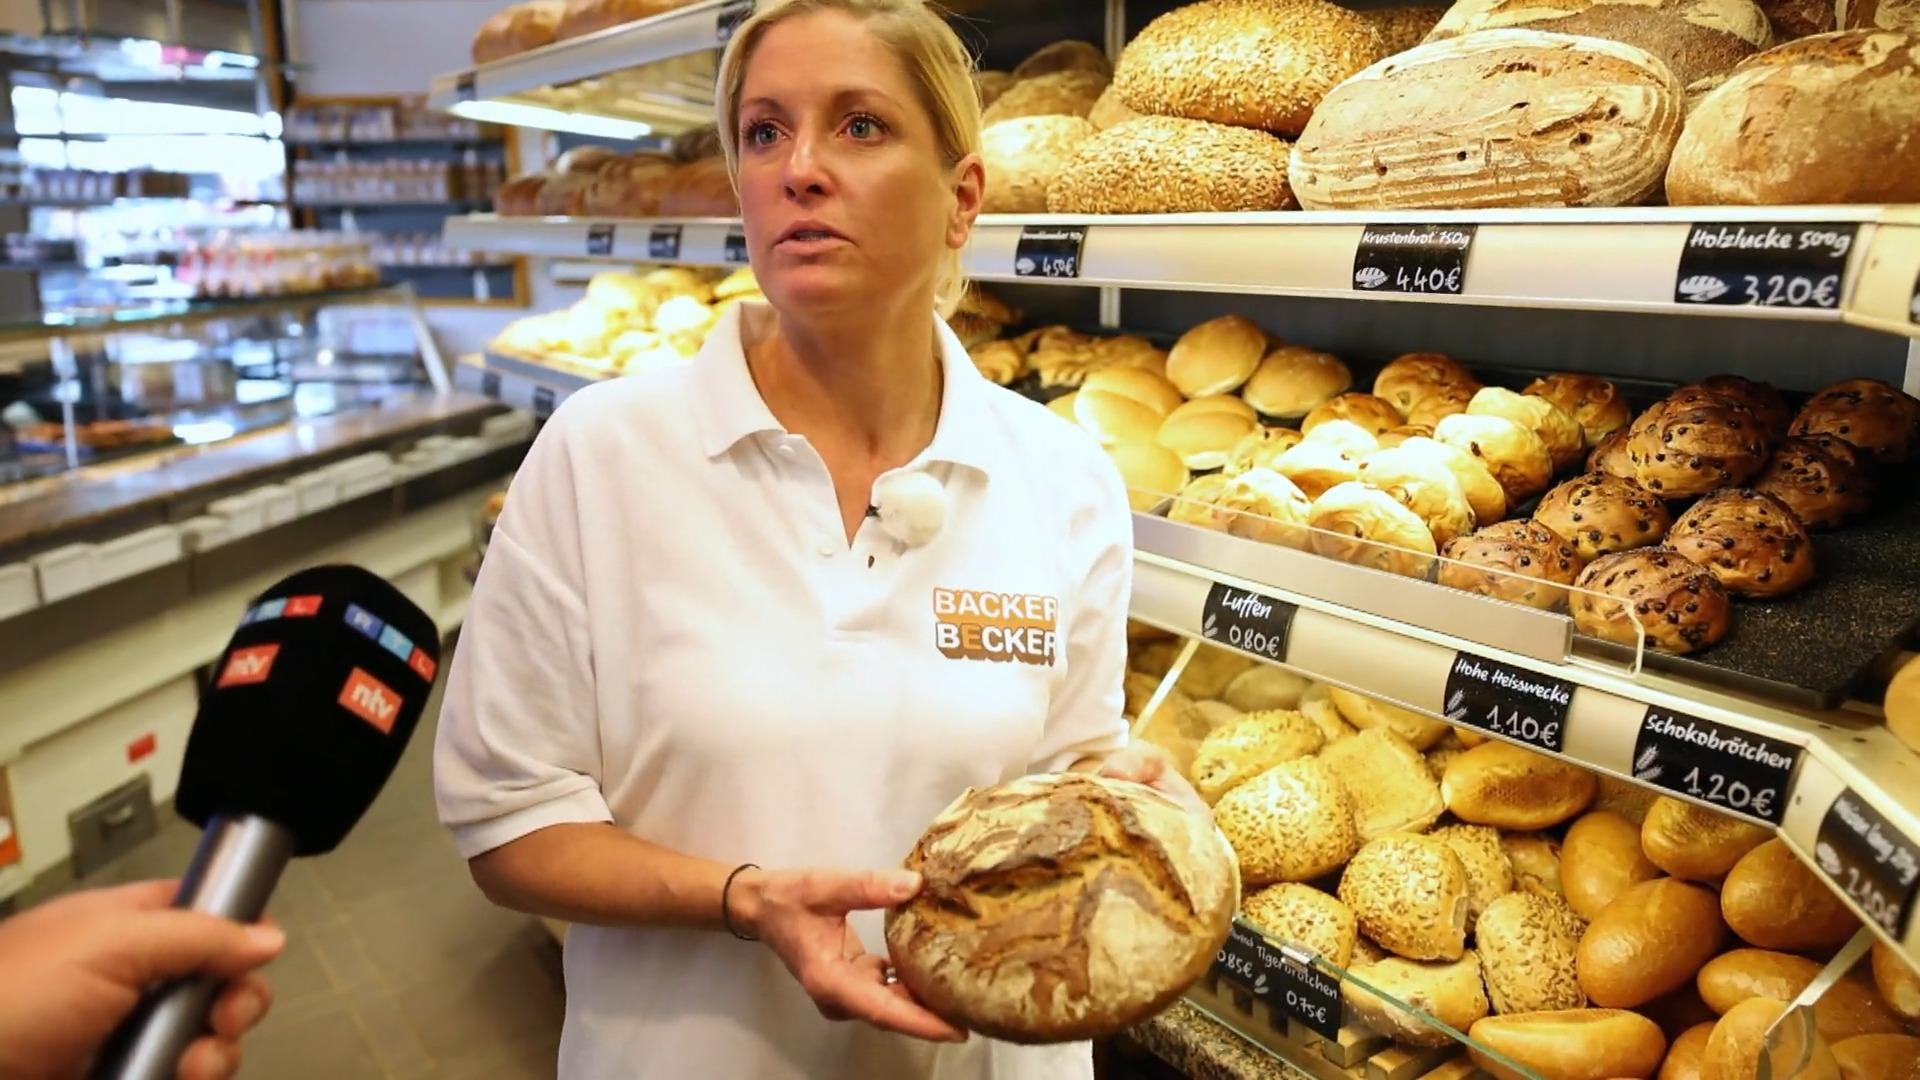 Bäckerei kämpft ums Überleben Steigende Kosten